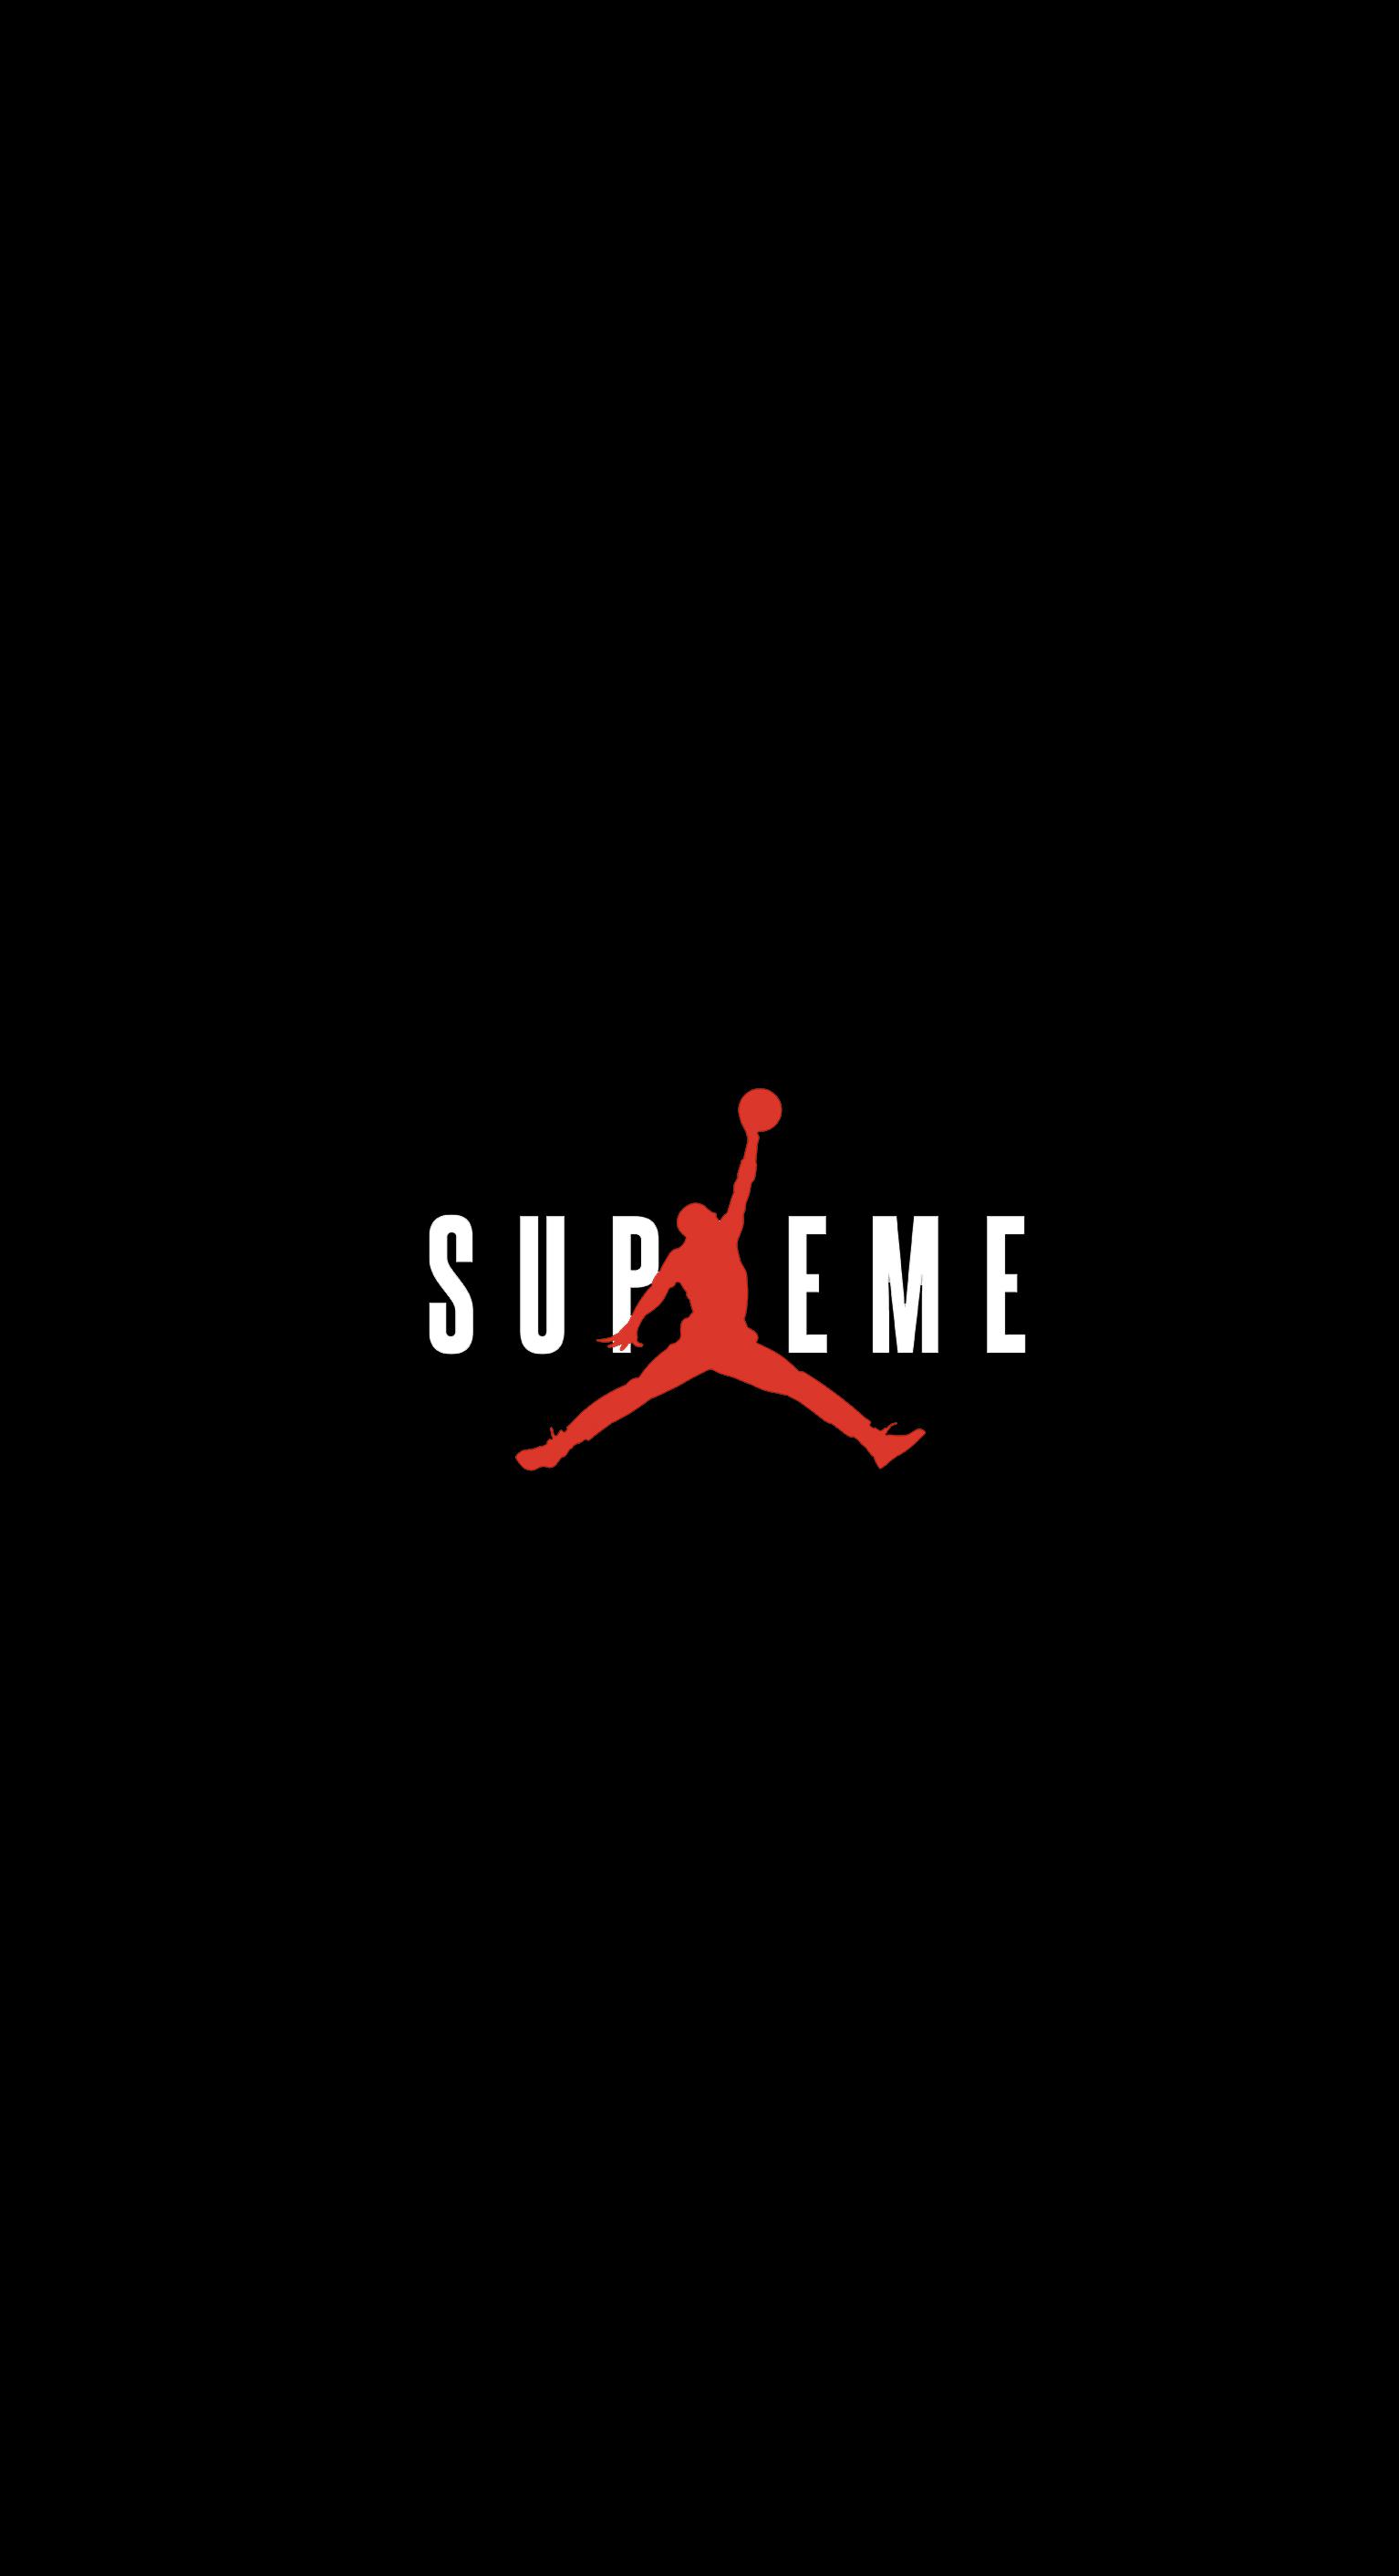 Supreme: Live HD Supreme Wallpaper, Photo